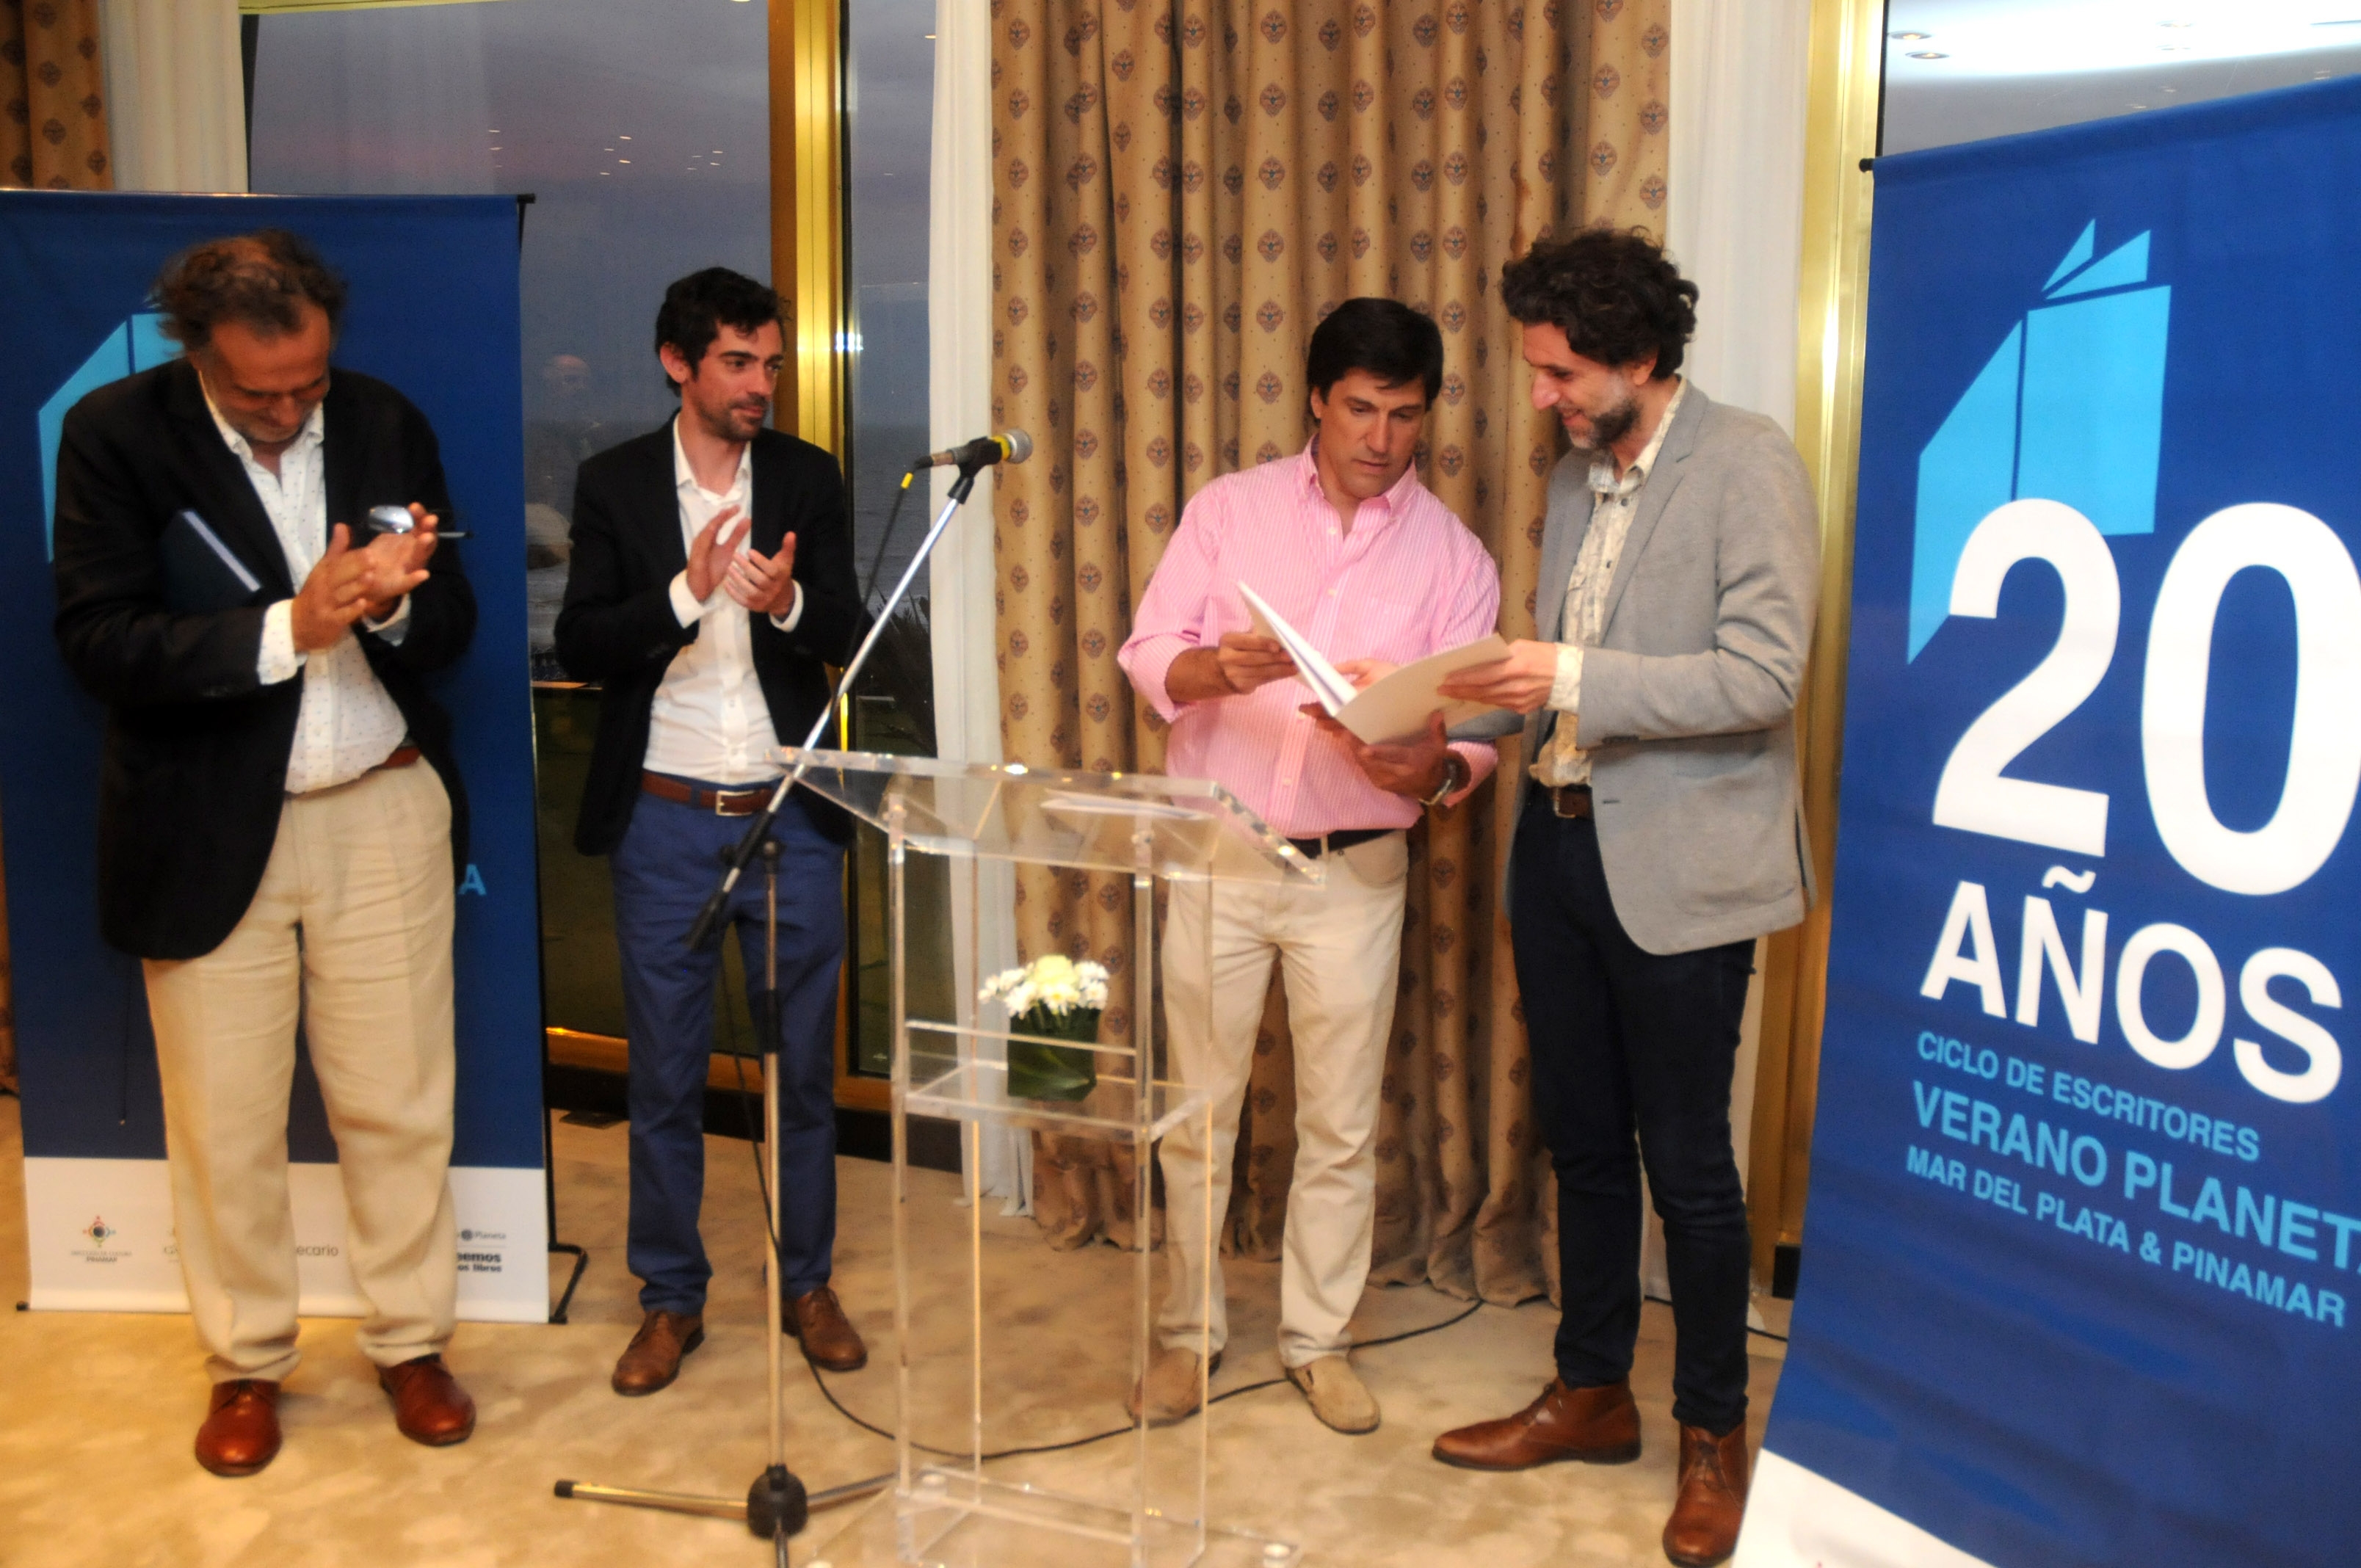 Los máximos directivos de Editorial Planeta estuvieron en Mar del Plata. Fueron incluso reconocidos por el concejal Mario Rodríguez, por los 20 años del ciclo. 